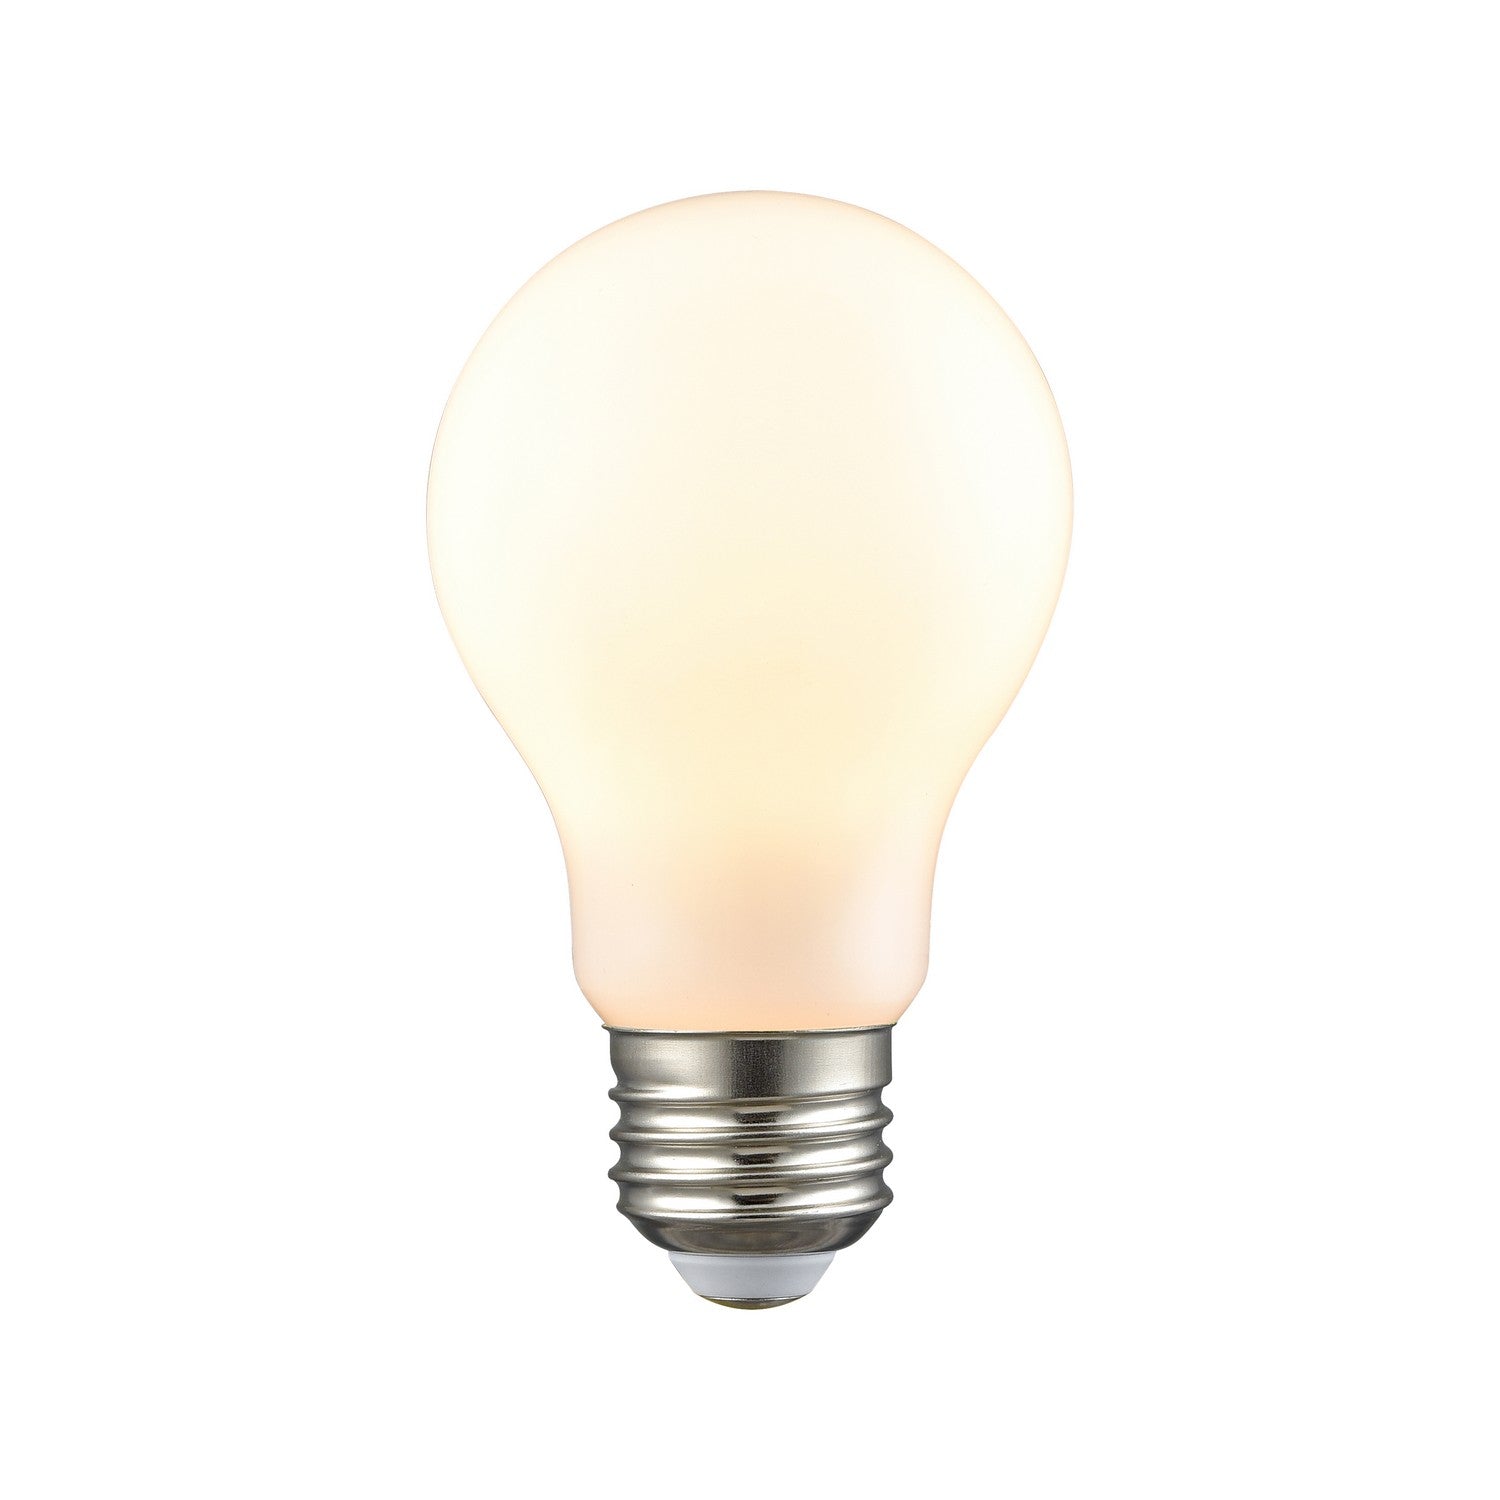 ELK Home - 1133 - Light Bulb - White